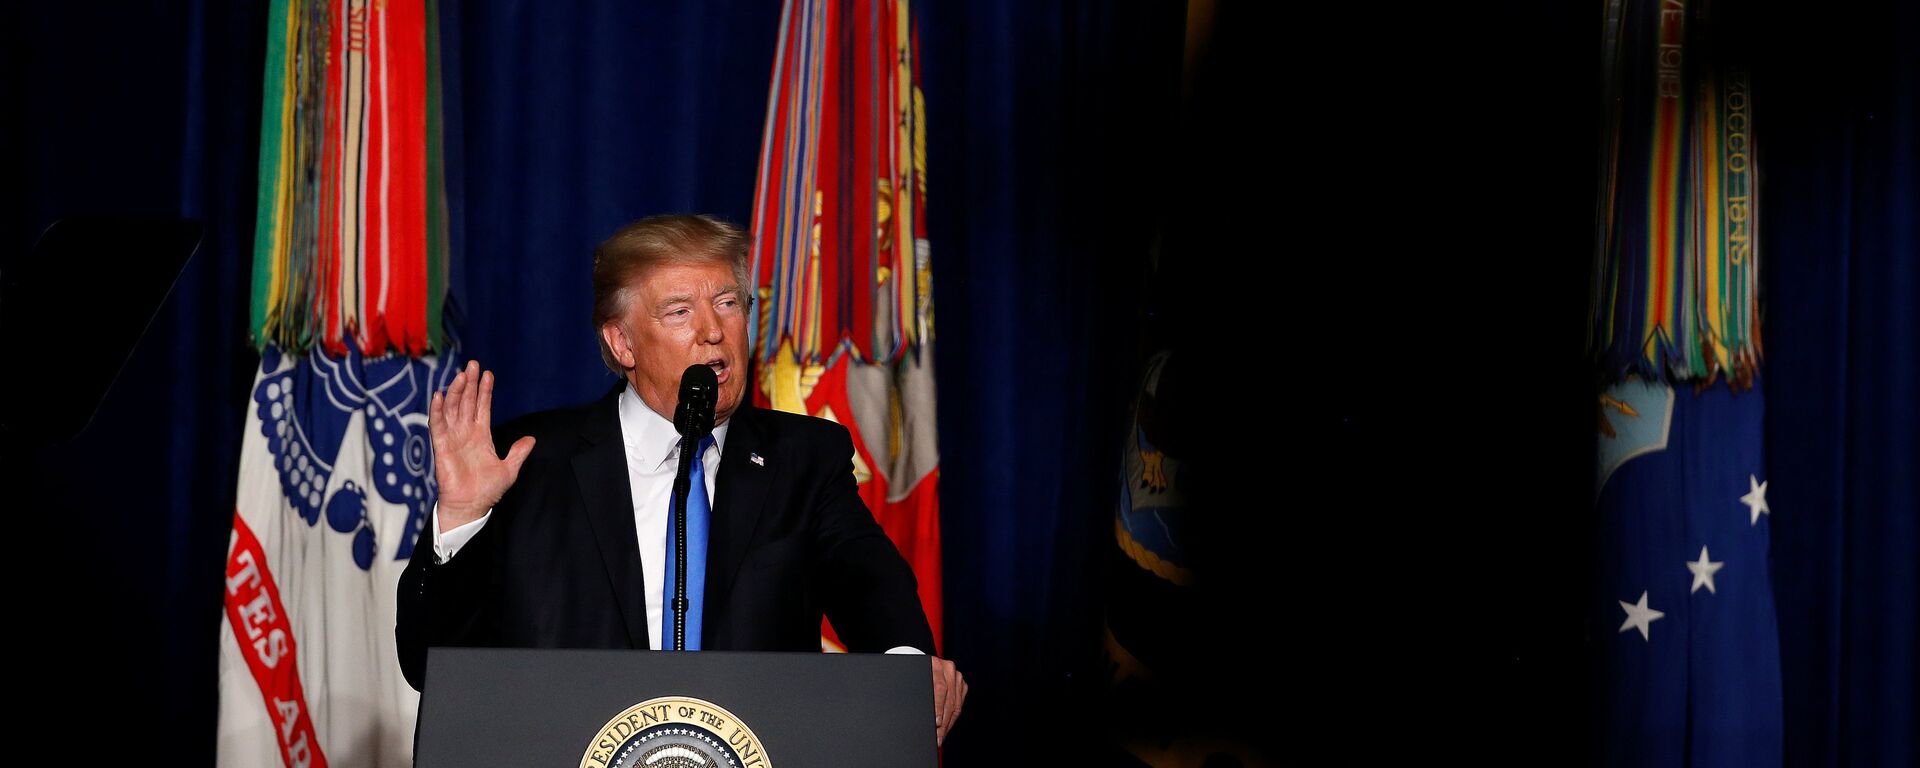 Амерички председник Доналд Трамп говори о стратегији САД у Авганистану у војној бази Форт Мајер у Вирџинији - Sputnik Србија, 1920, 18.08.2021